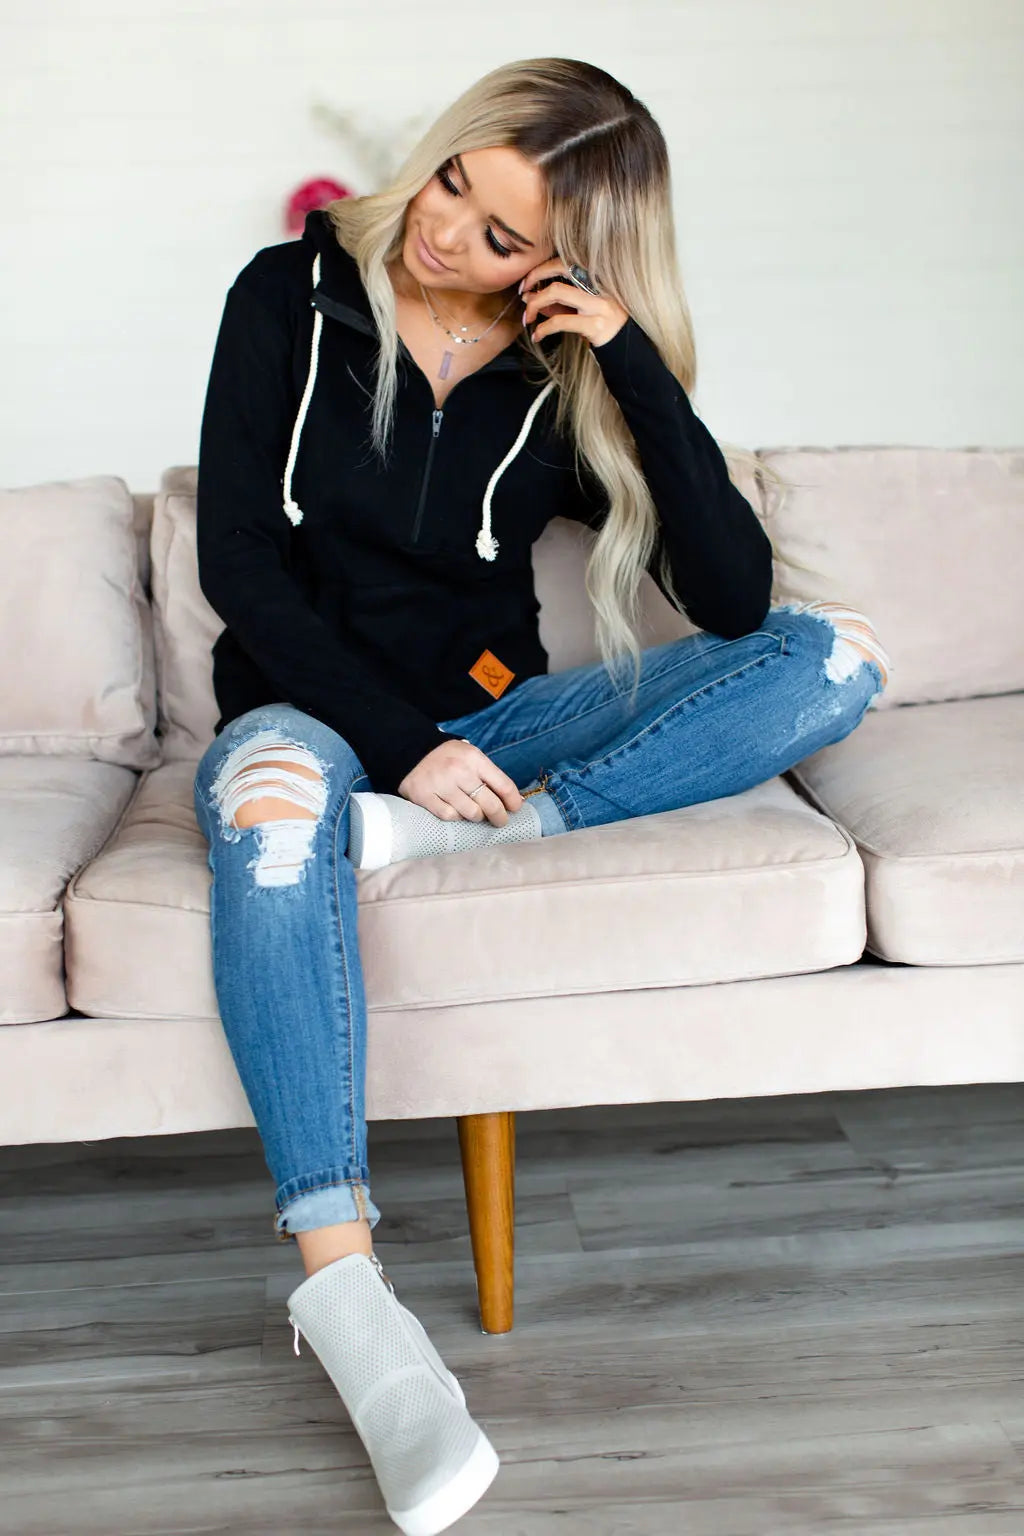 HalfZip Hoodie - Black - Mindy Mae's Marketcomfy cute hoodies